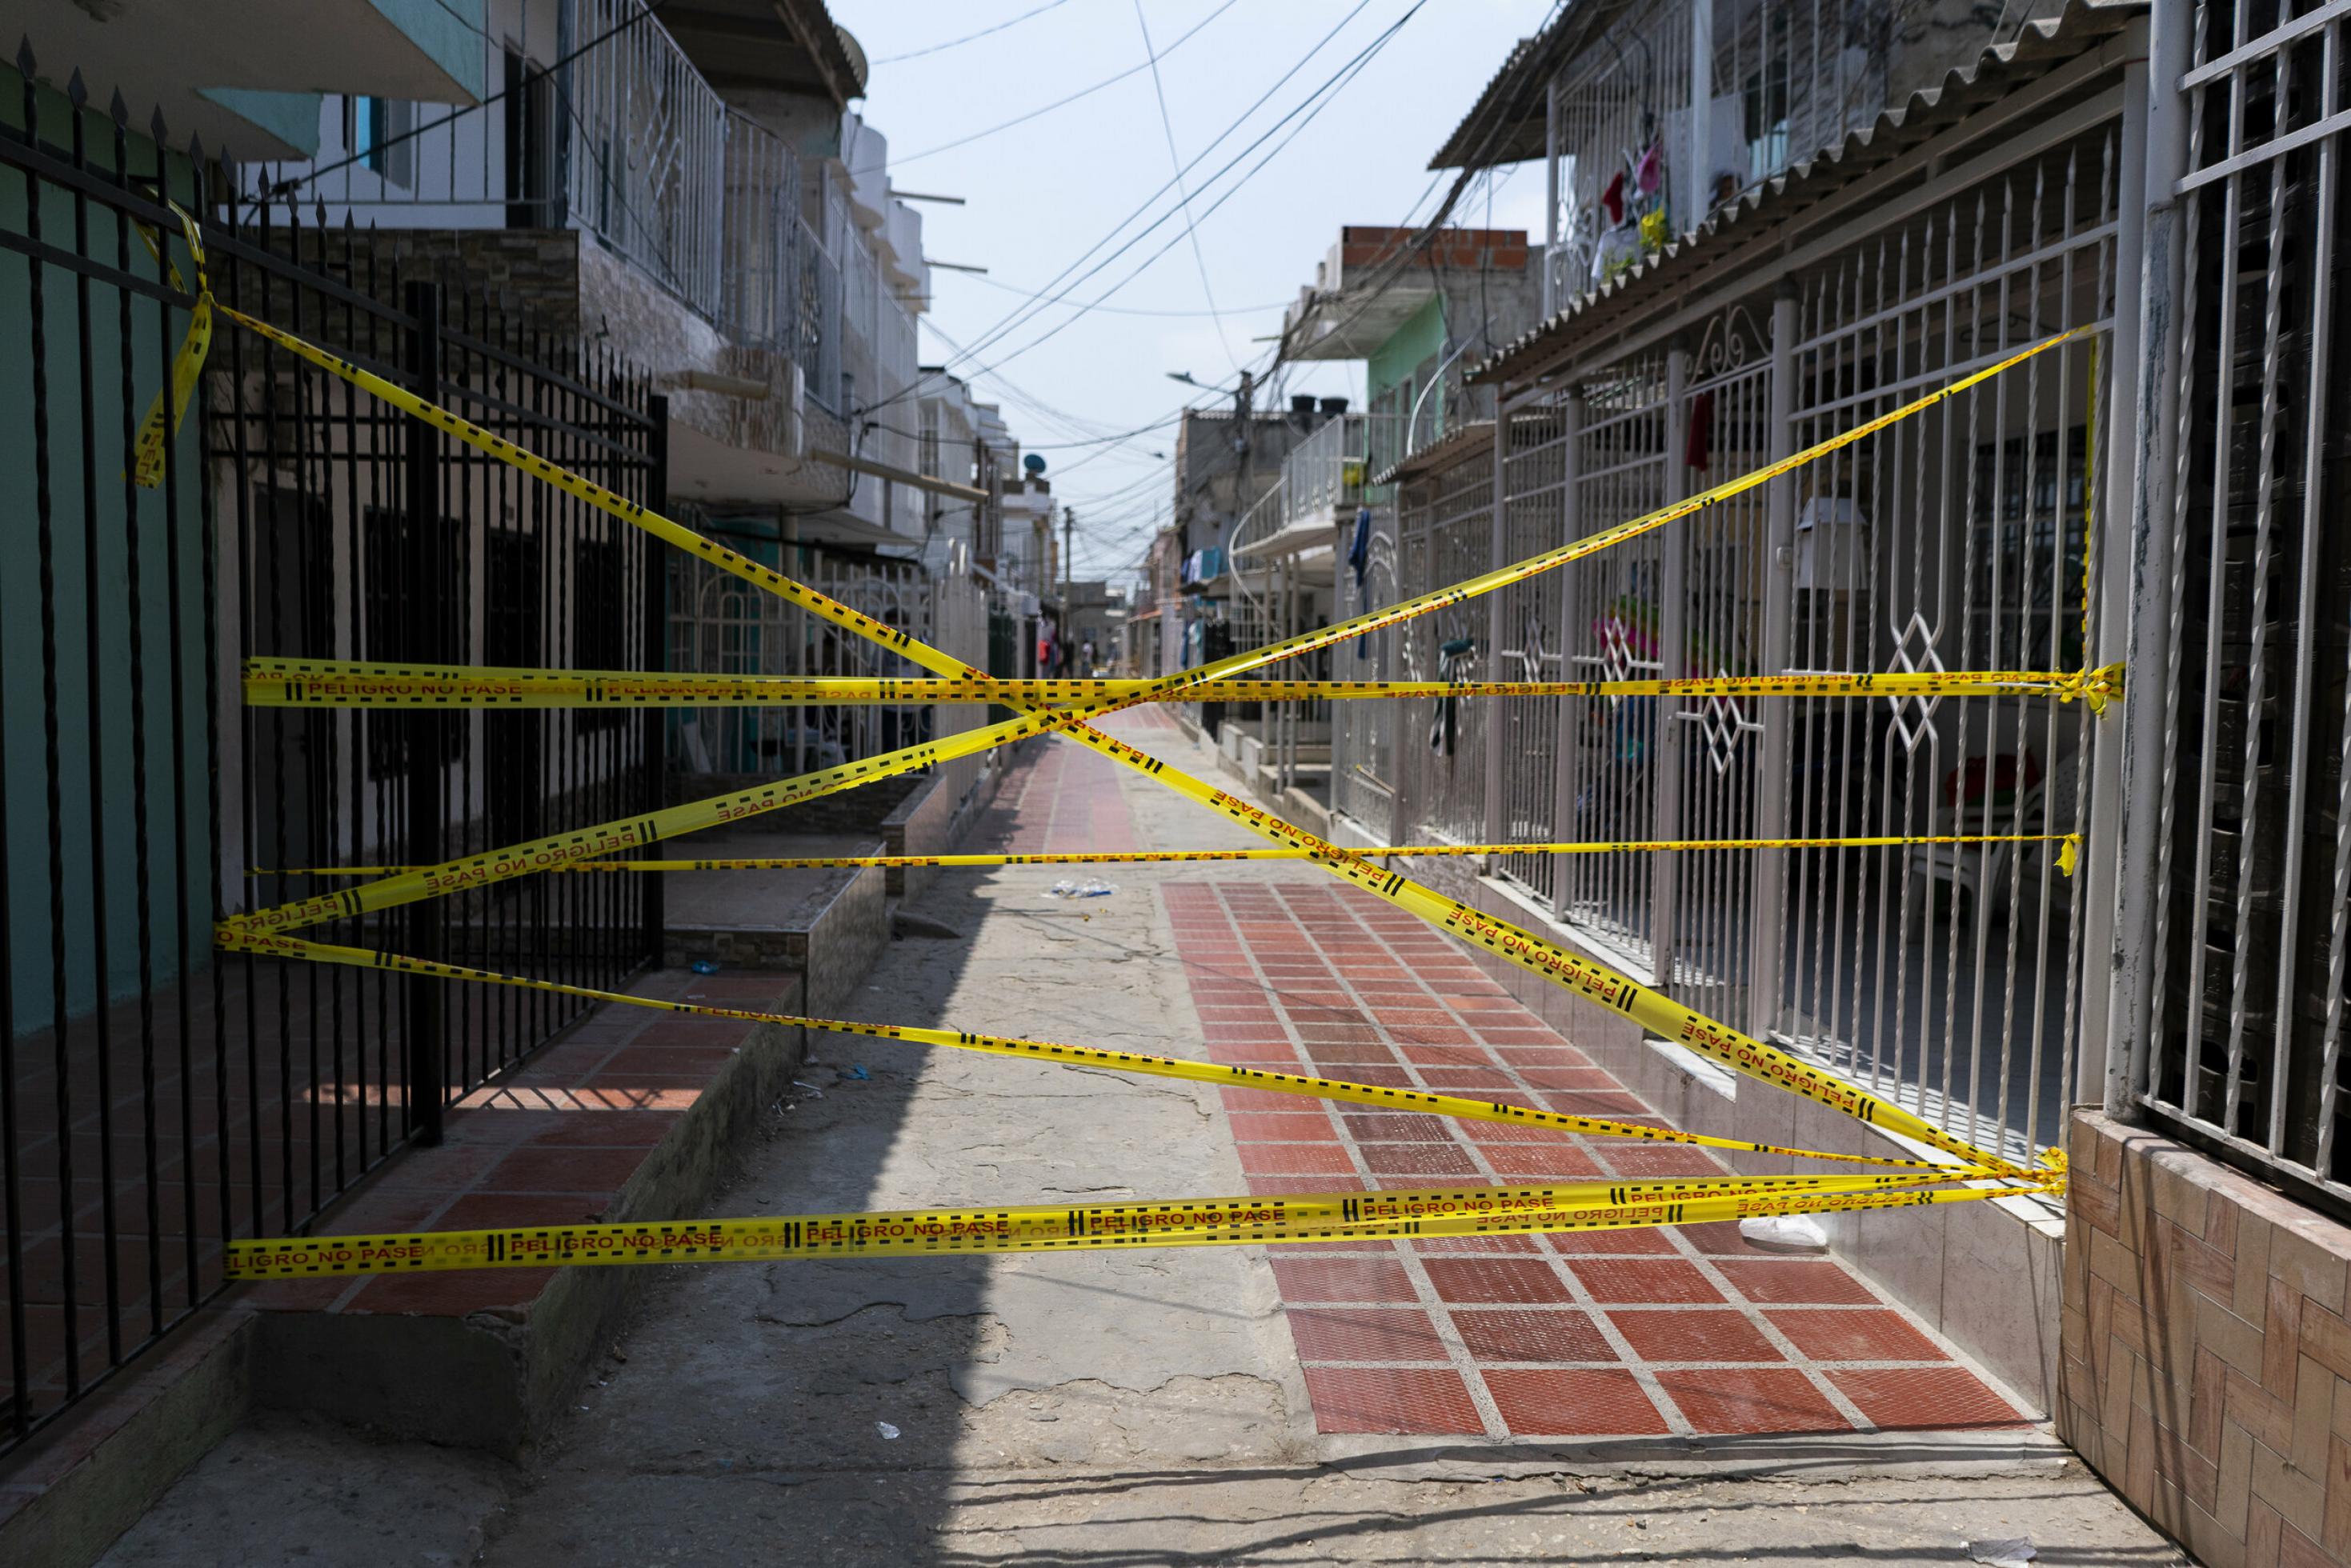 Das Foto zeigt den mit gelbem Warn-Plastikband kreuz und quer gesperrten Eingang zu einer Gasse in der kolumbianischen Karibikstadt Barranquilla. Die zweistöckigen Häuser stehen sich eng gegenüber. Sie grenzen sich zur Gasse mit mannshohen Gitterzäunen ab, was an einen Gefängnisflur erinnert.